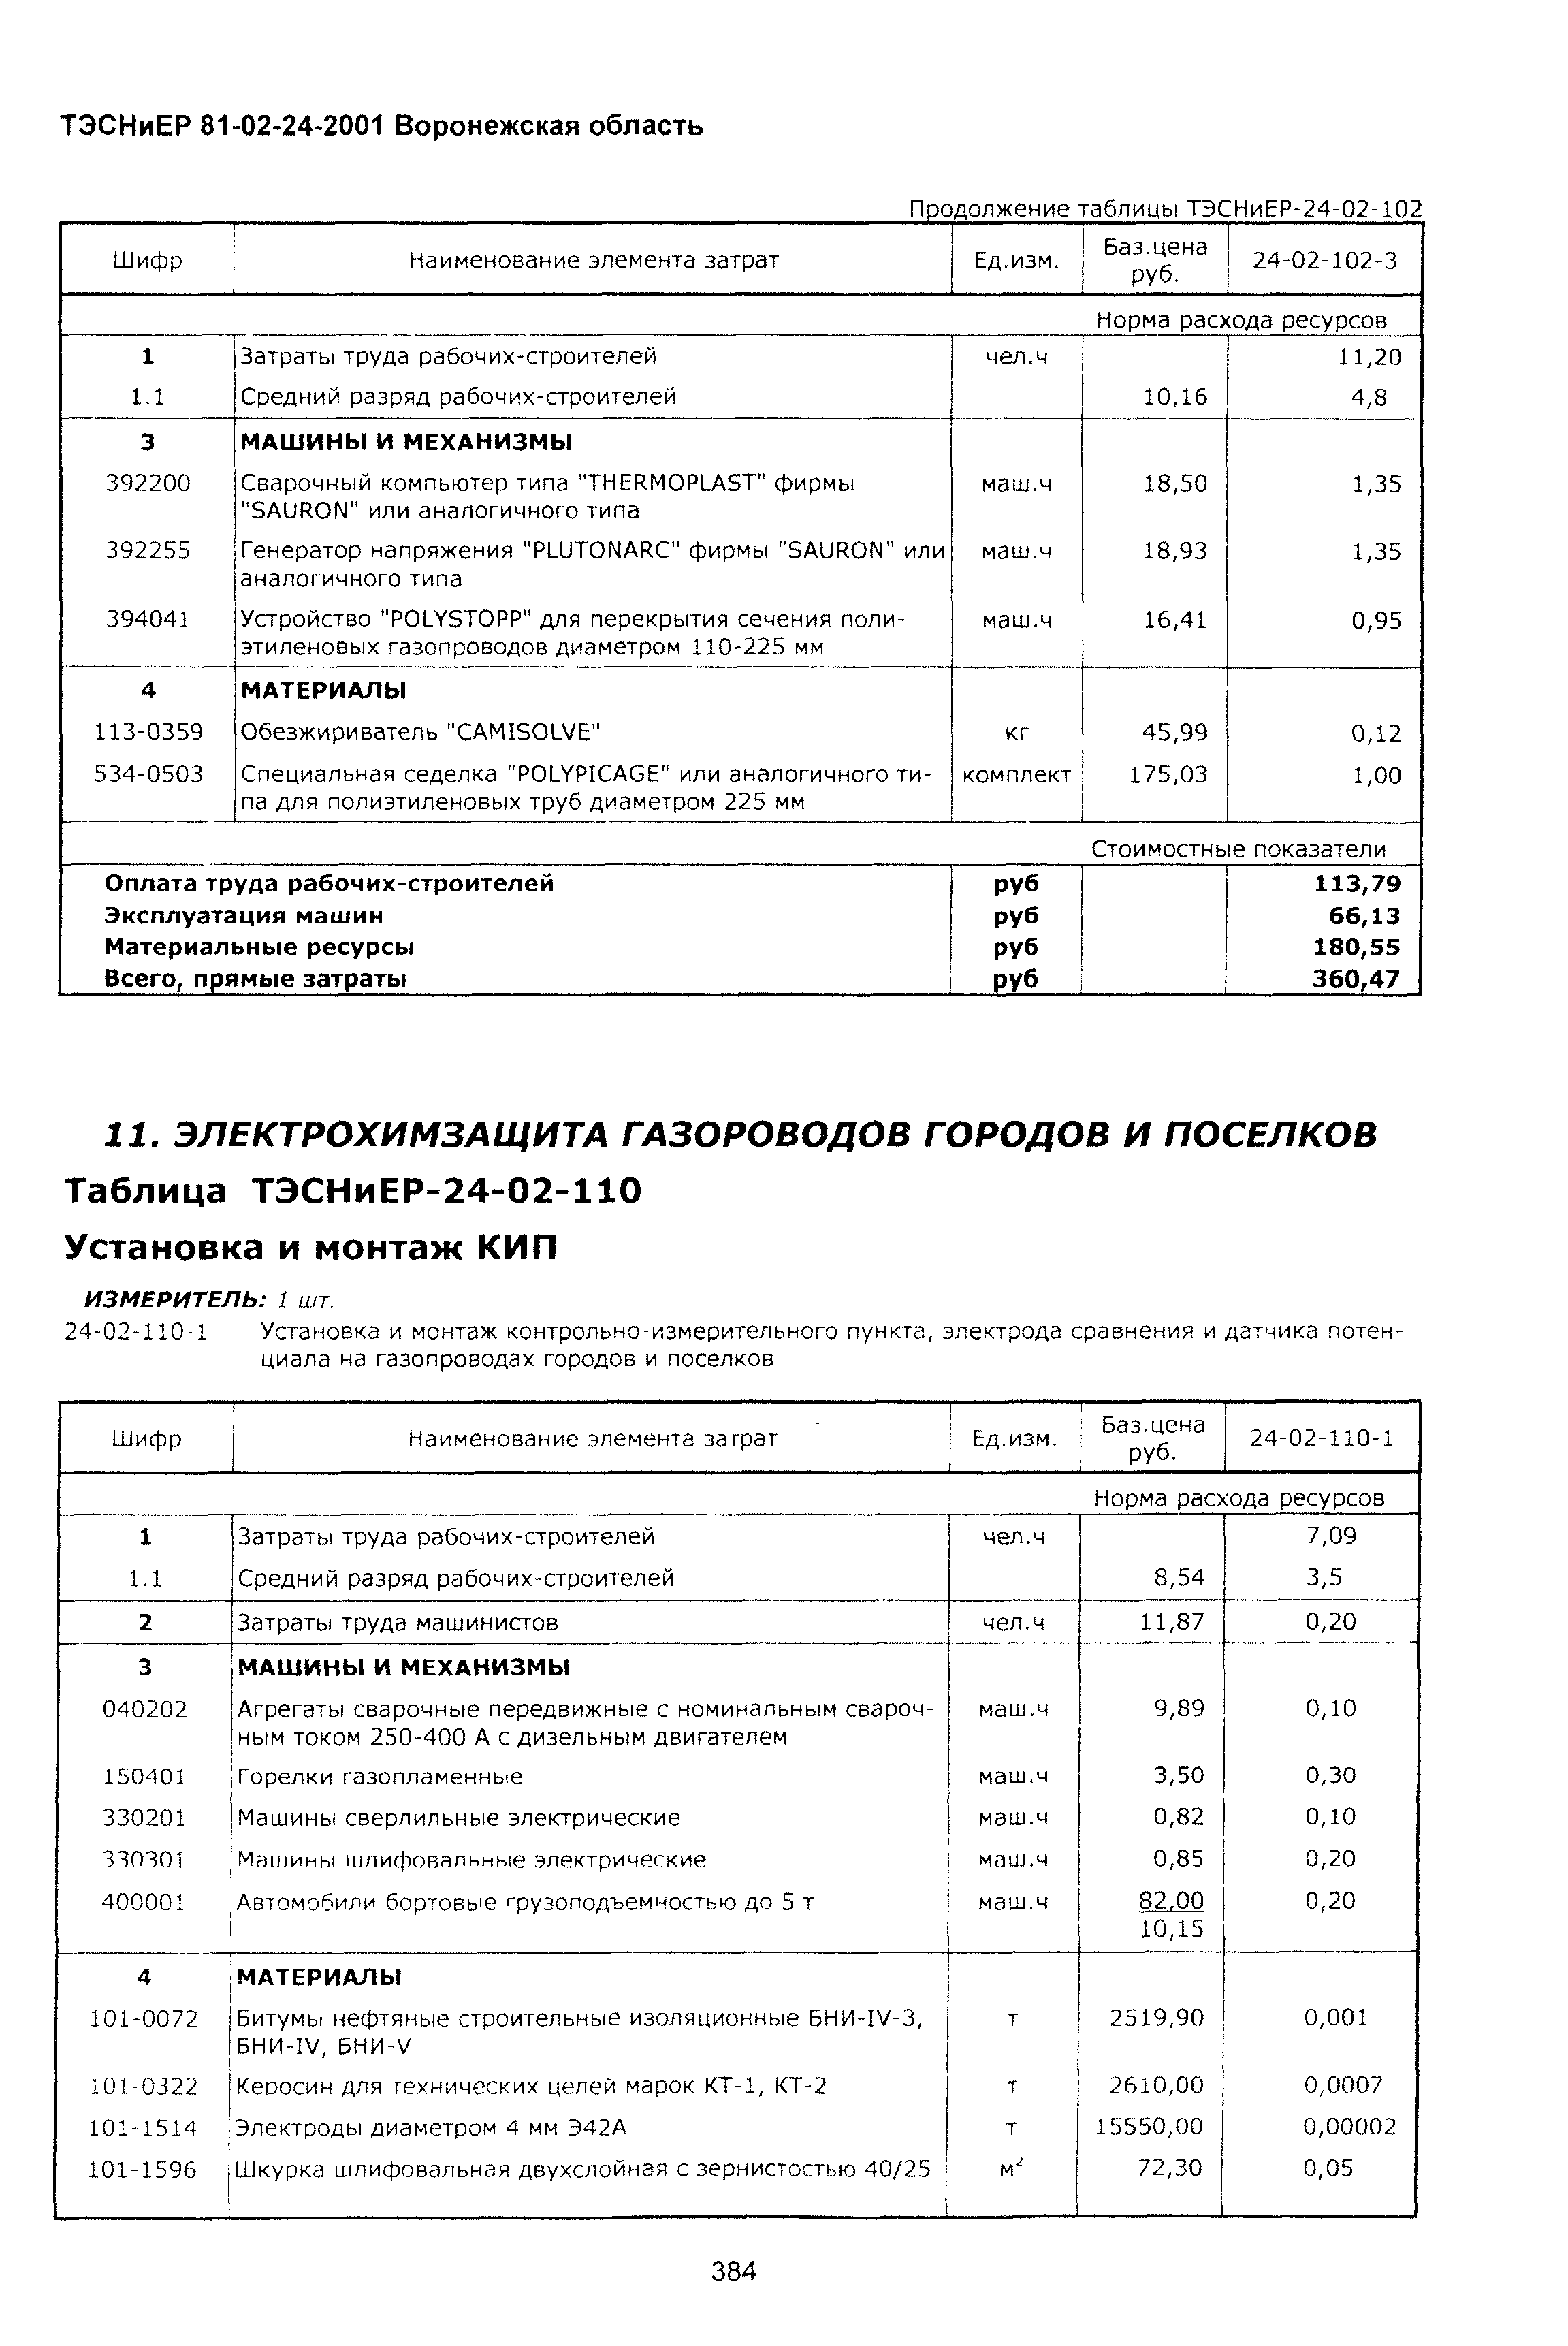 ТЭСНиЕР Воронежской области 81-02-24-2001